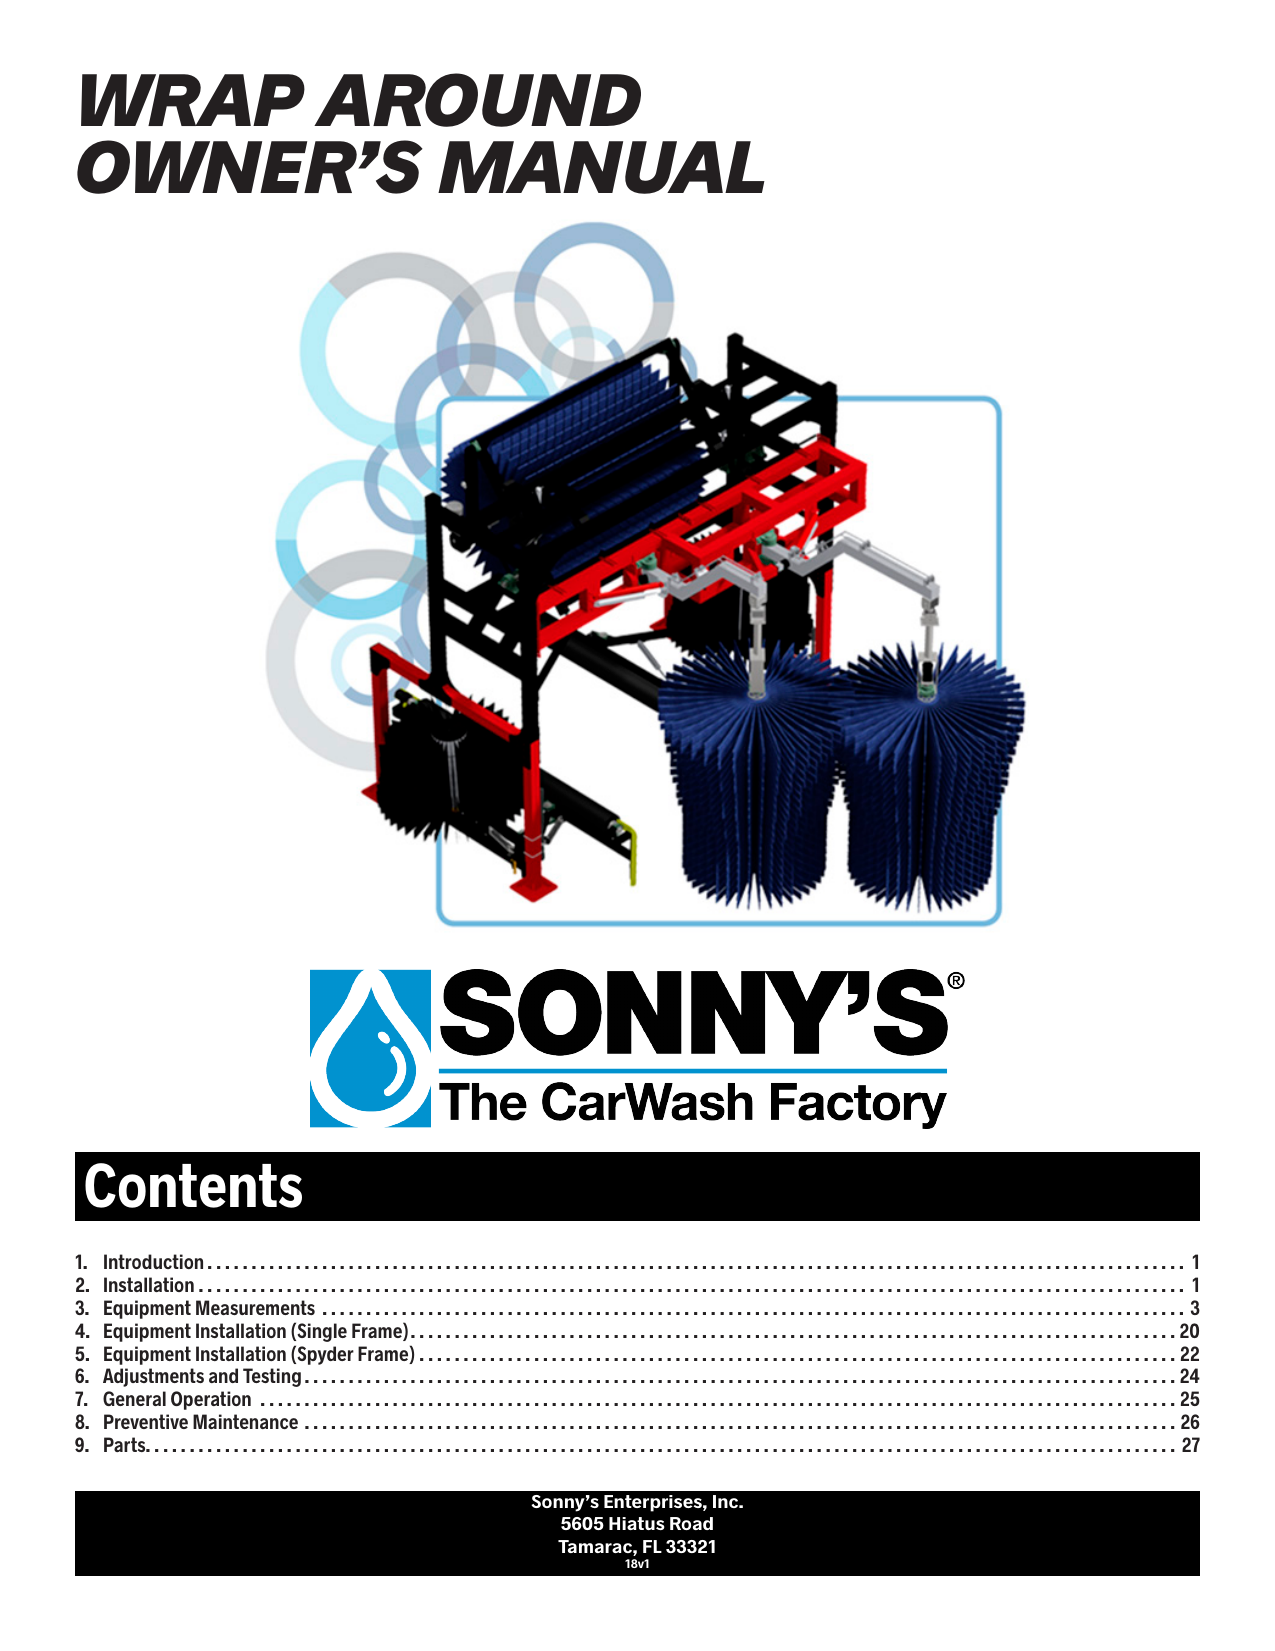 sonny's car wash equipment manuals